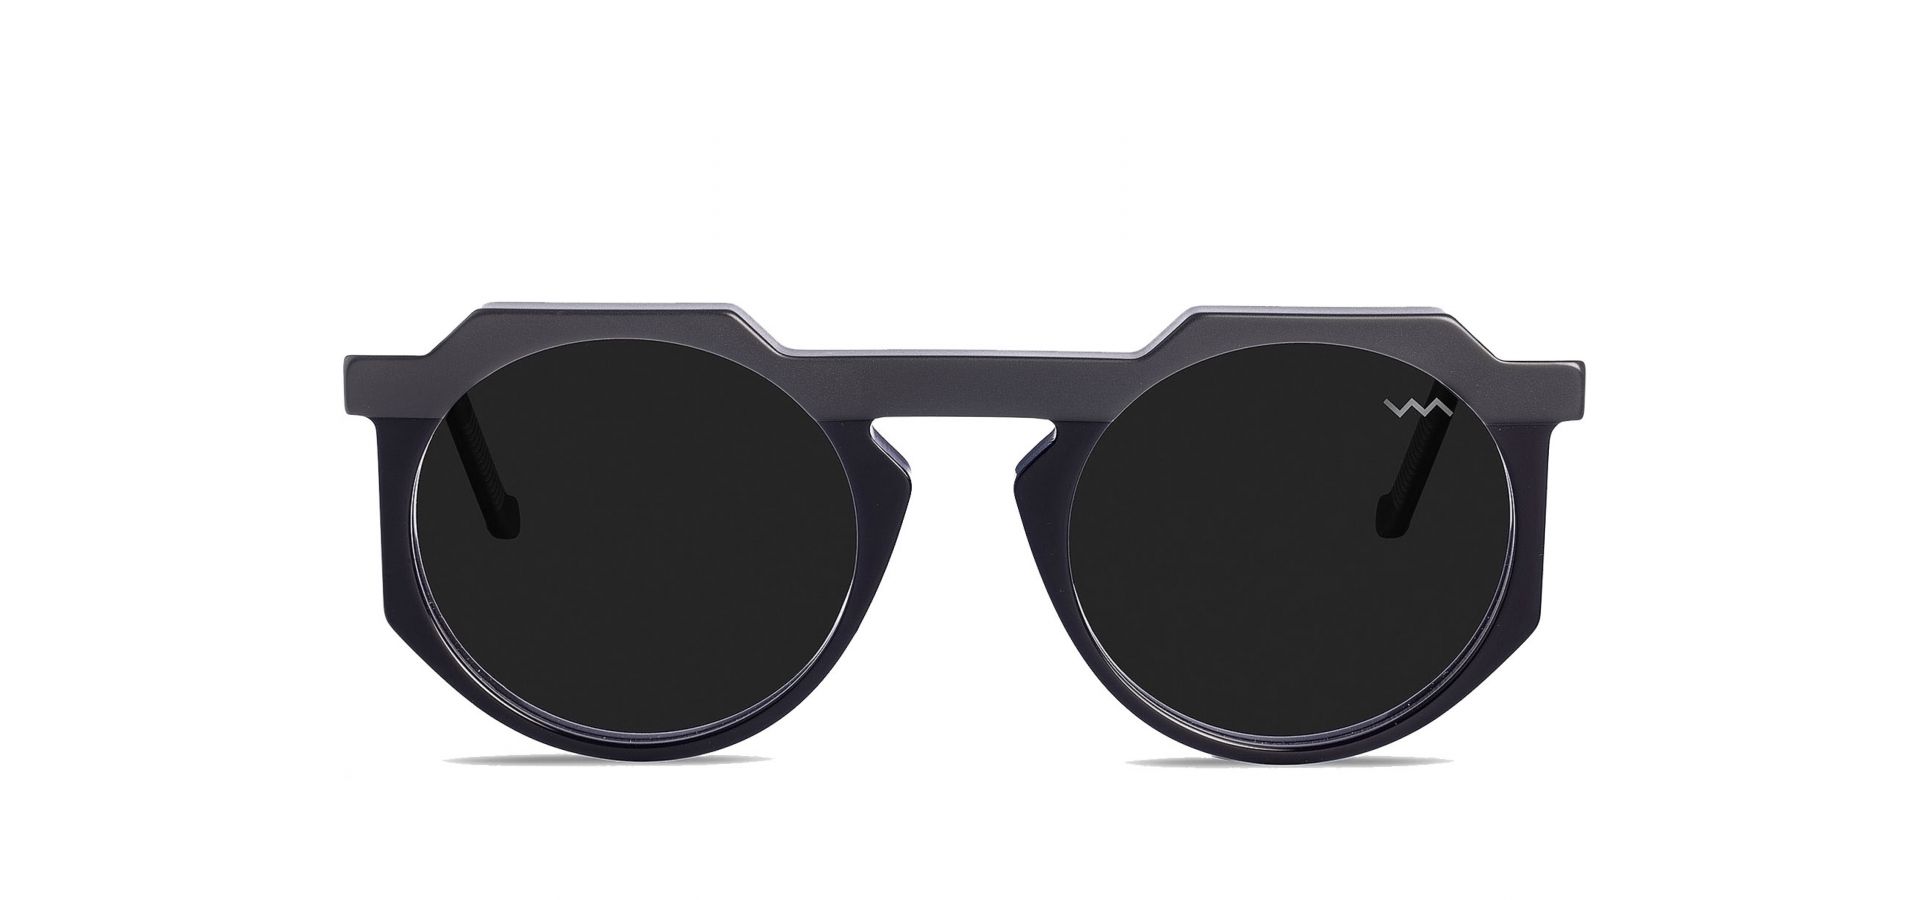 Sončna očala VAVA WL0028 BLACK SILVER: Velikost: 52/22/140, Spol: unisex, Material: acetat/kovinska